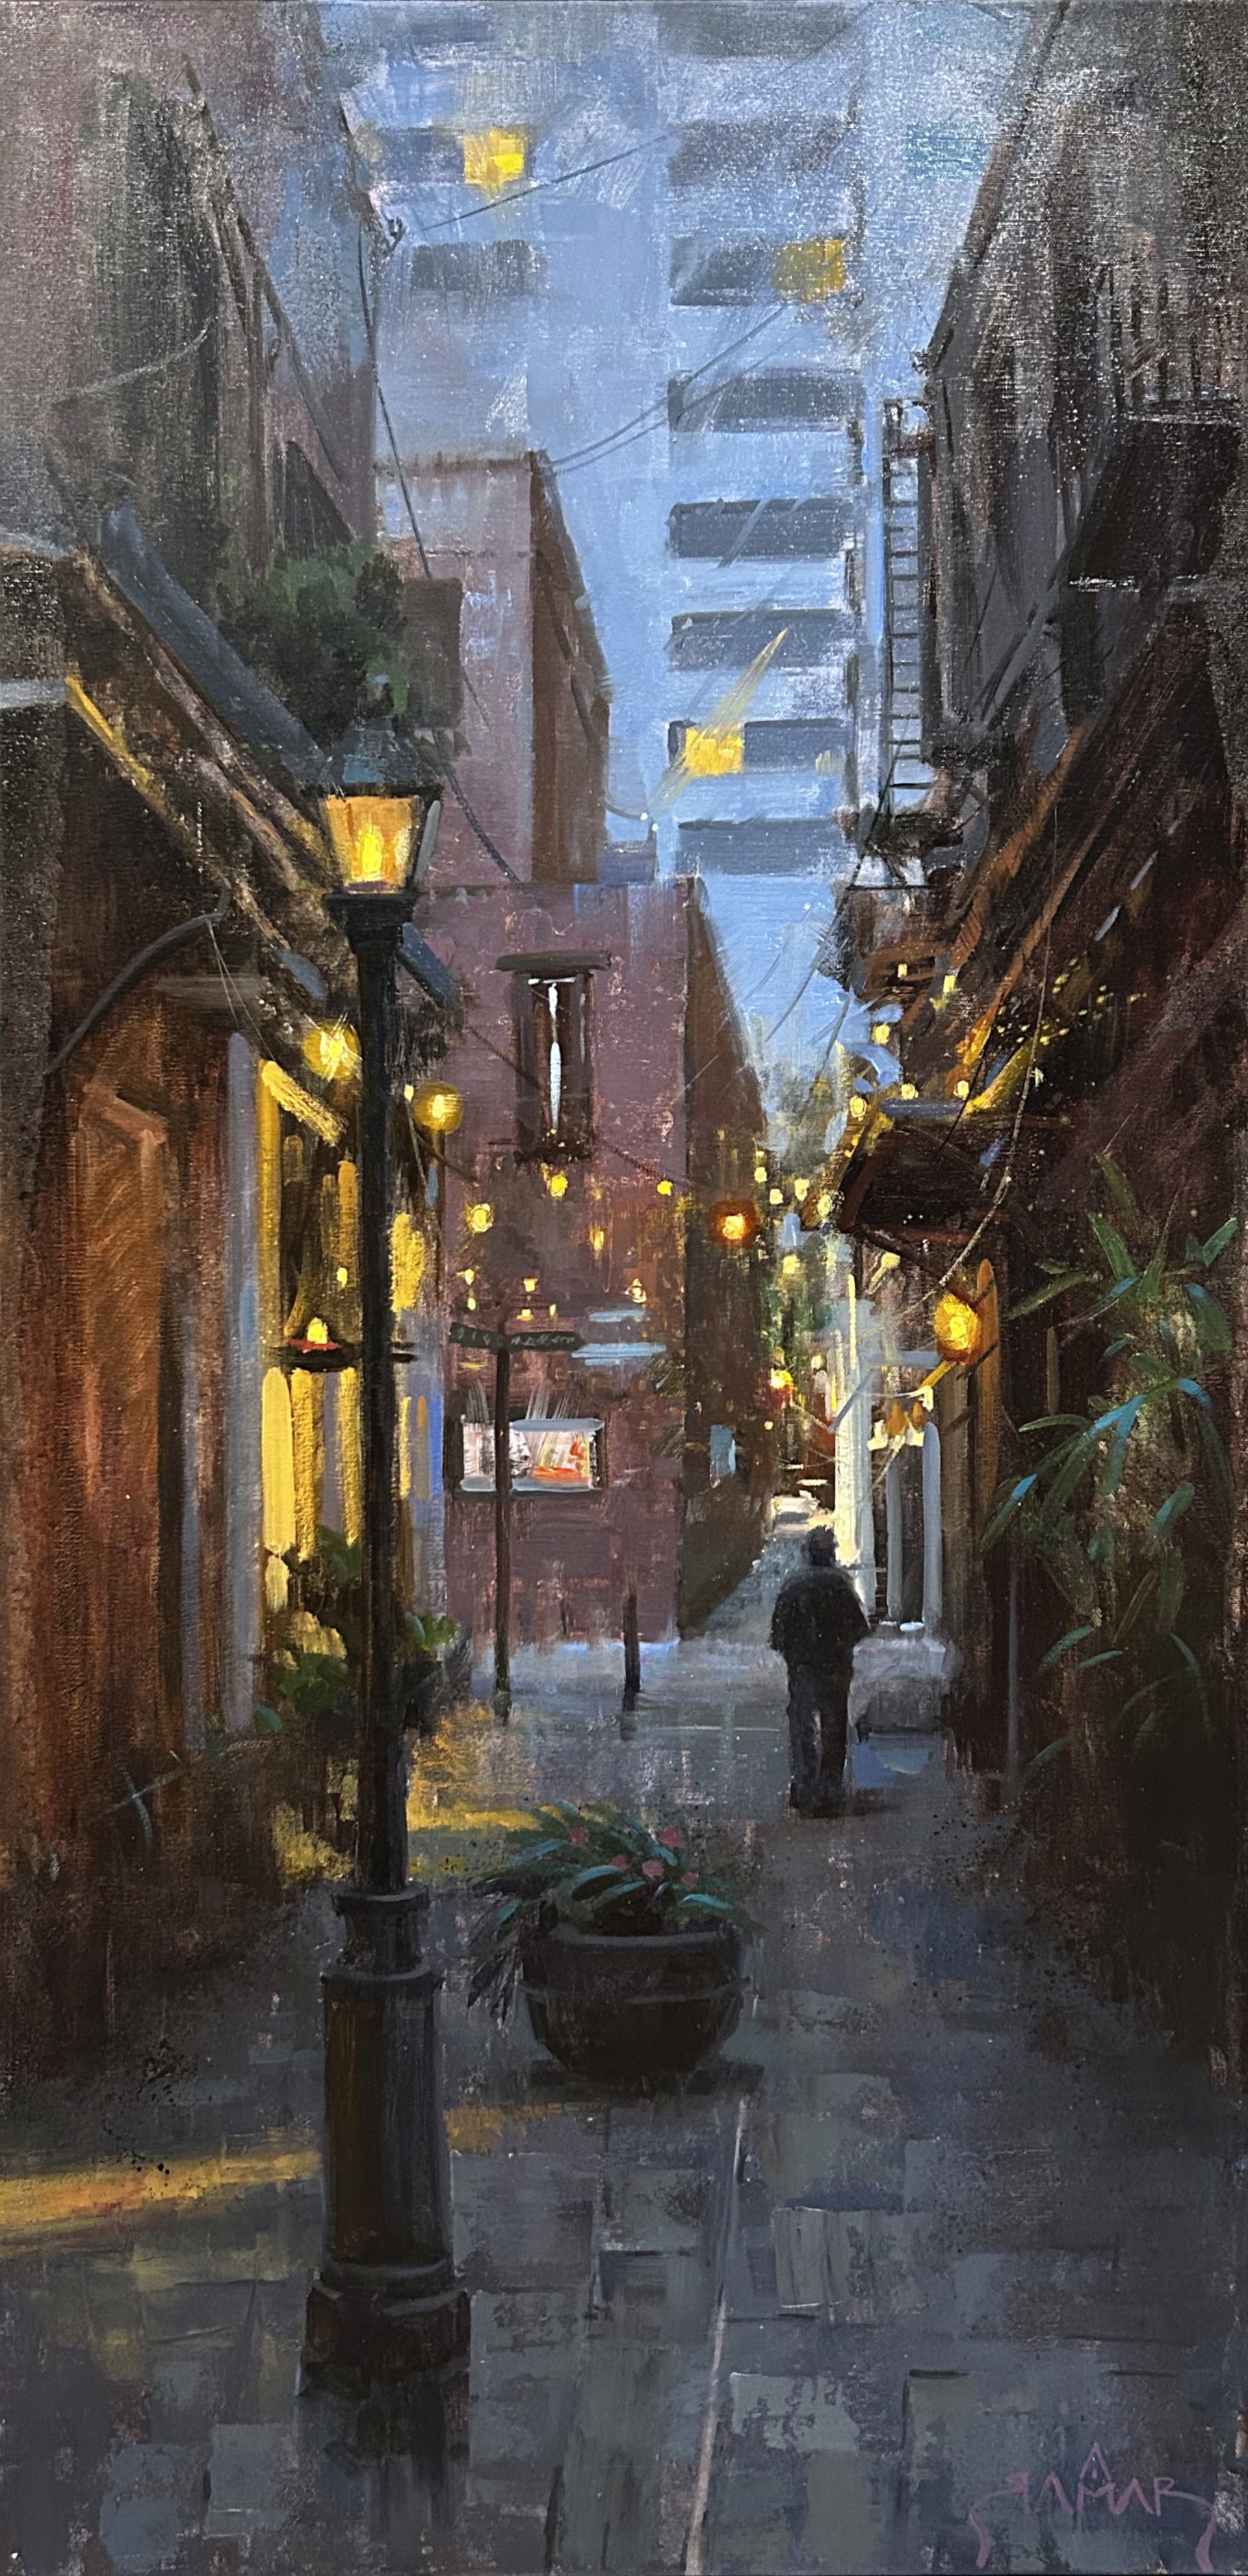 A Secret Alley by Antwan Ramar